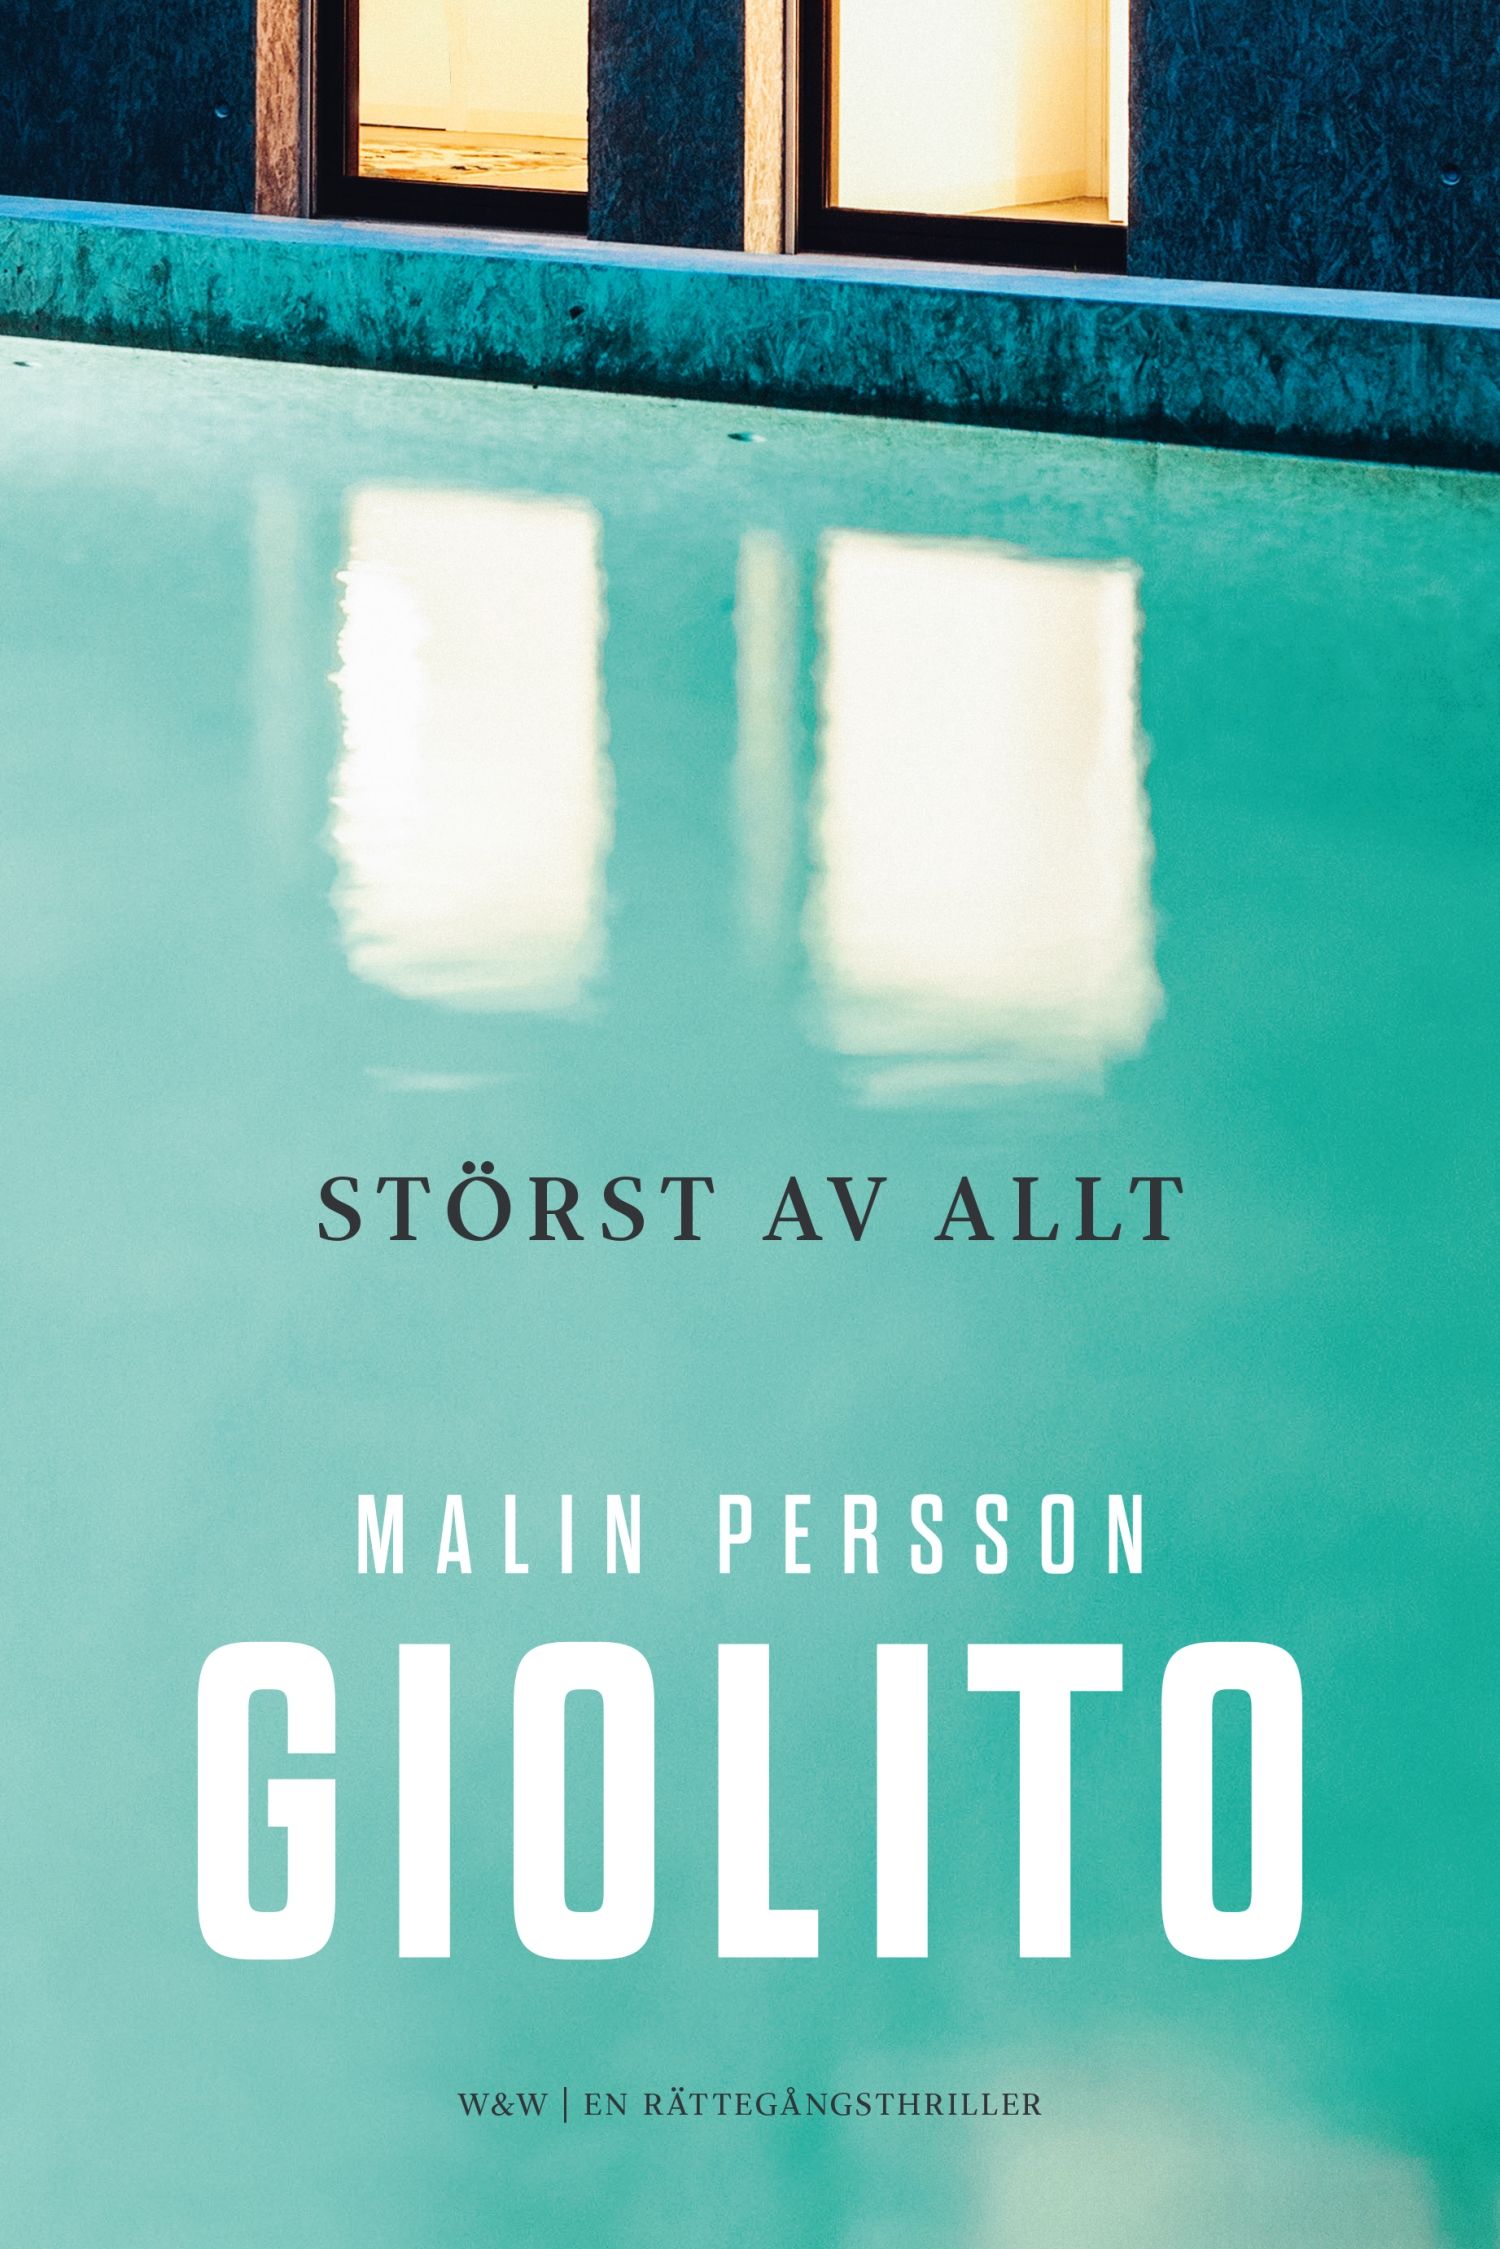 Störst av allt, e-bog af Malin Persson Giolito